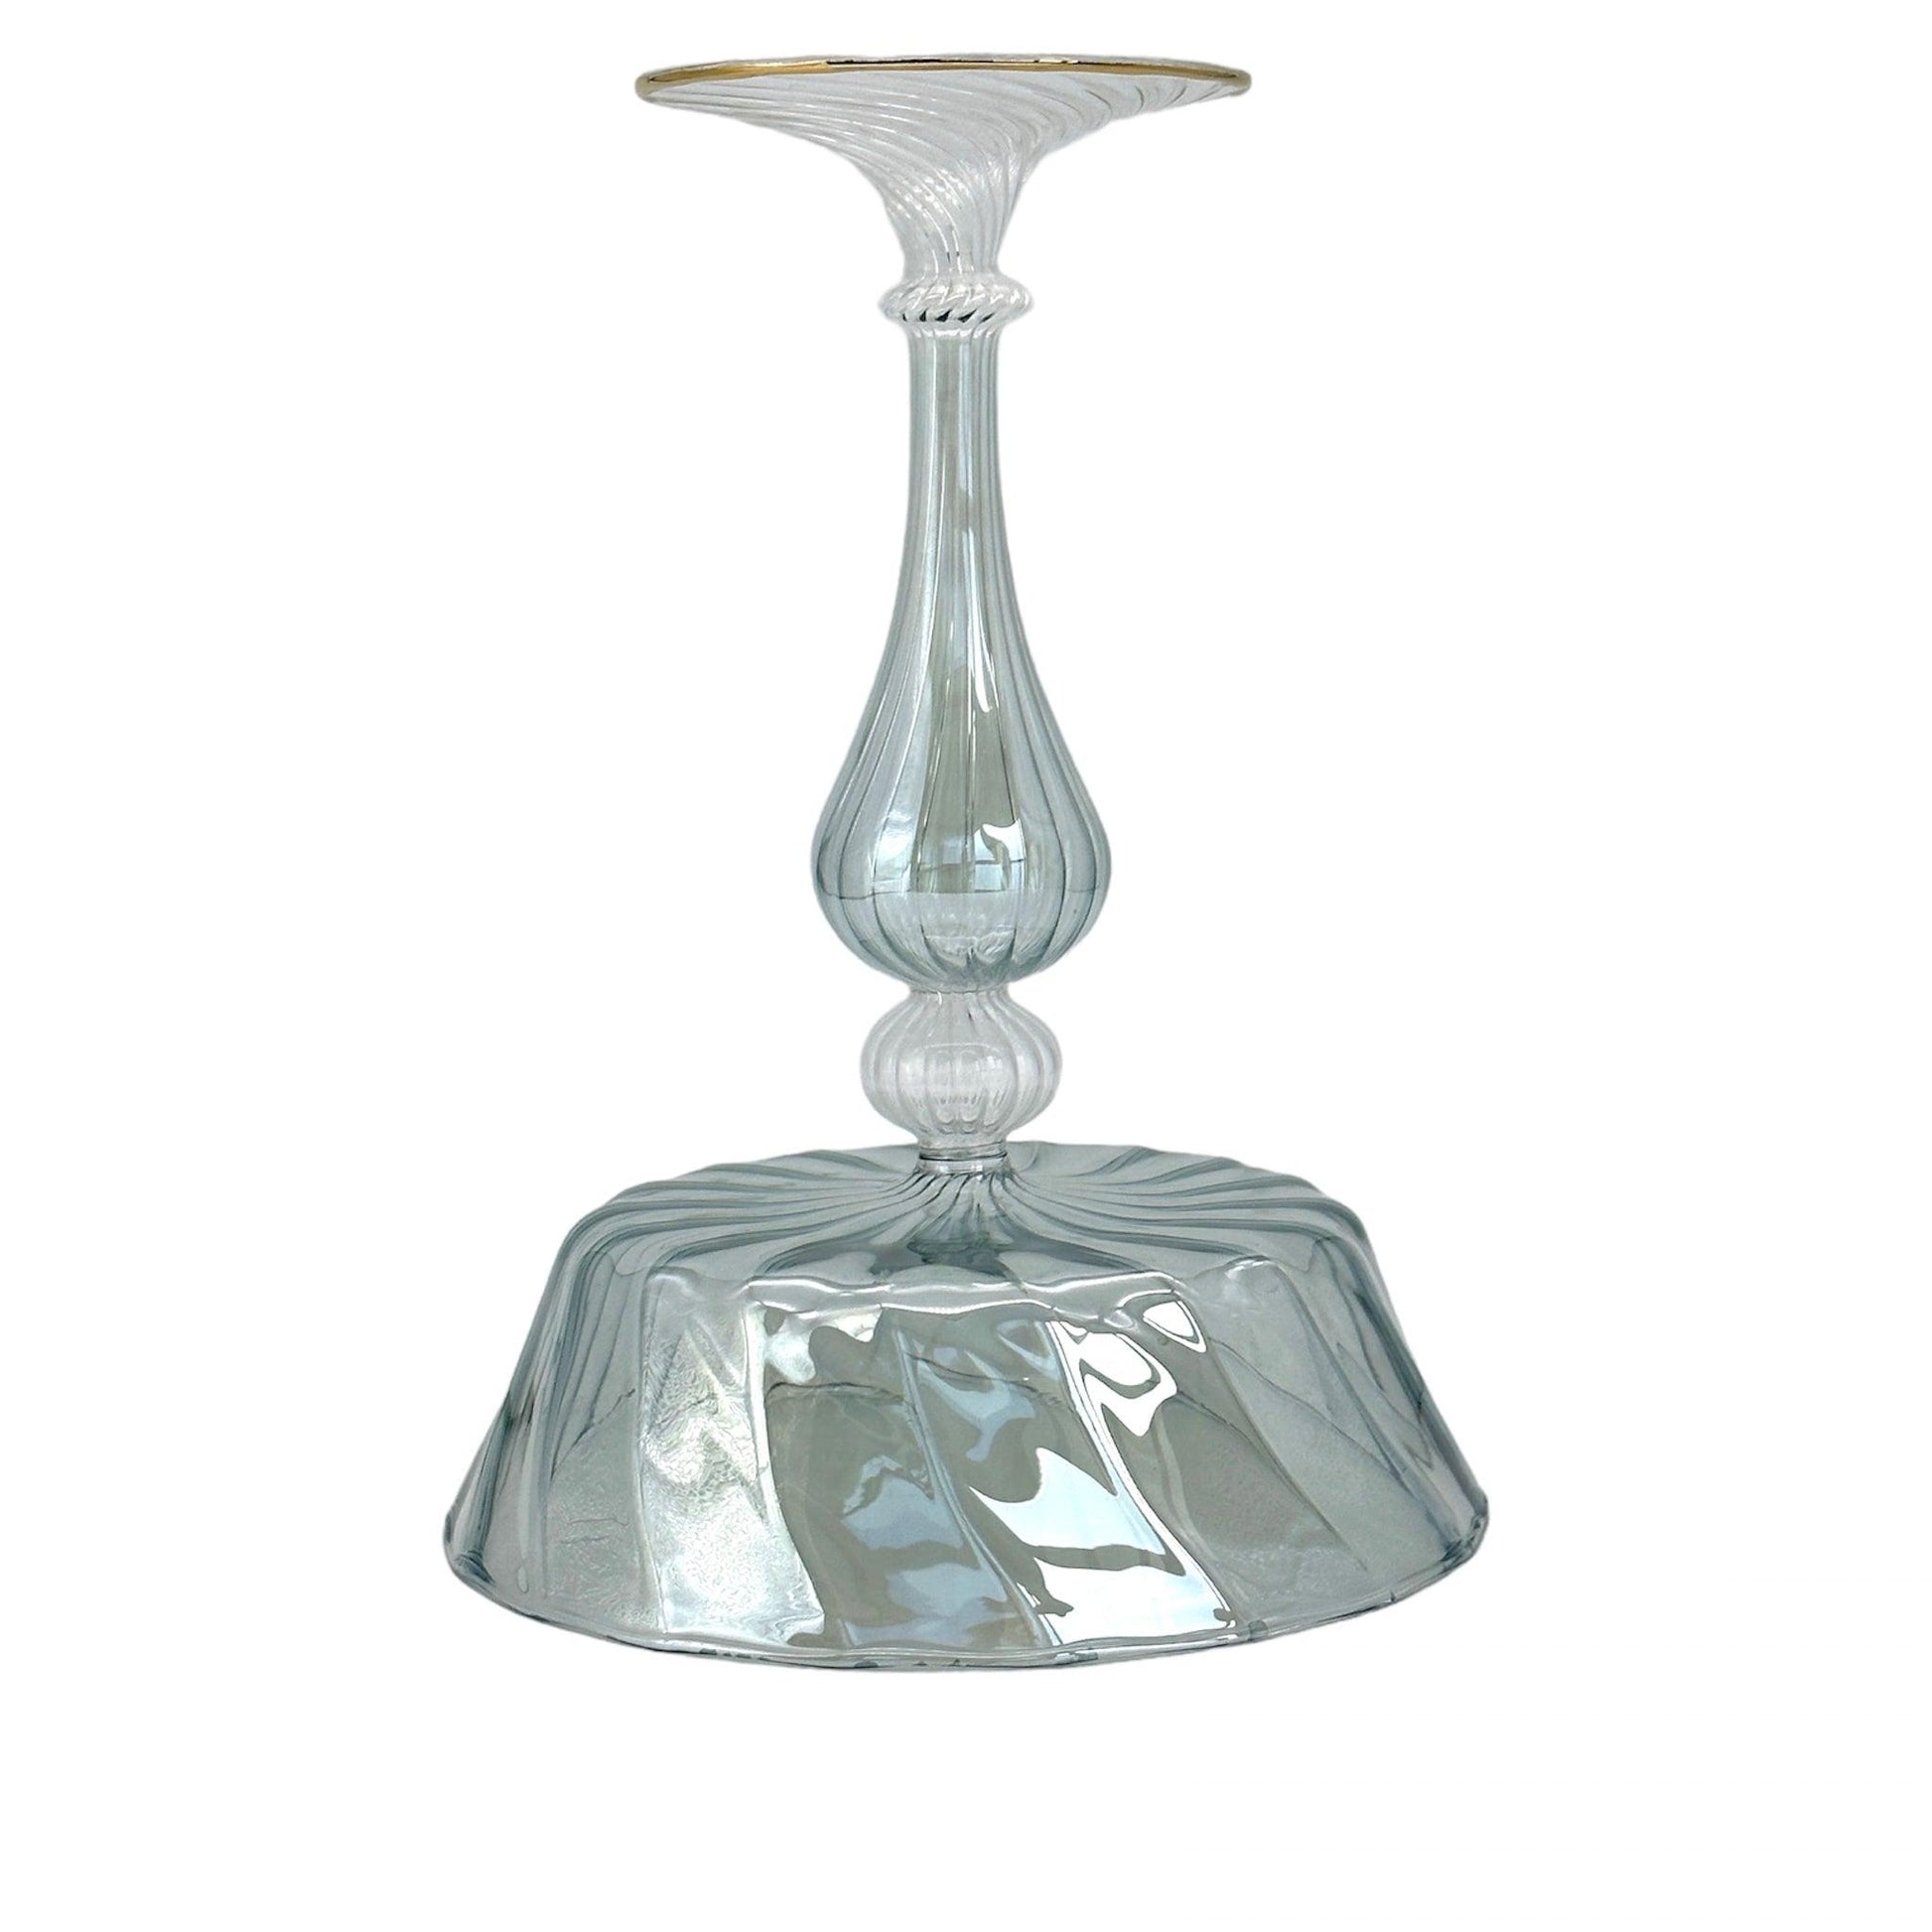 Venetian Vintage Glass Compote Tazza | Ornamental Glassware Collectible